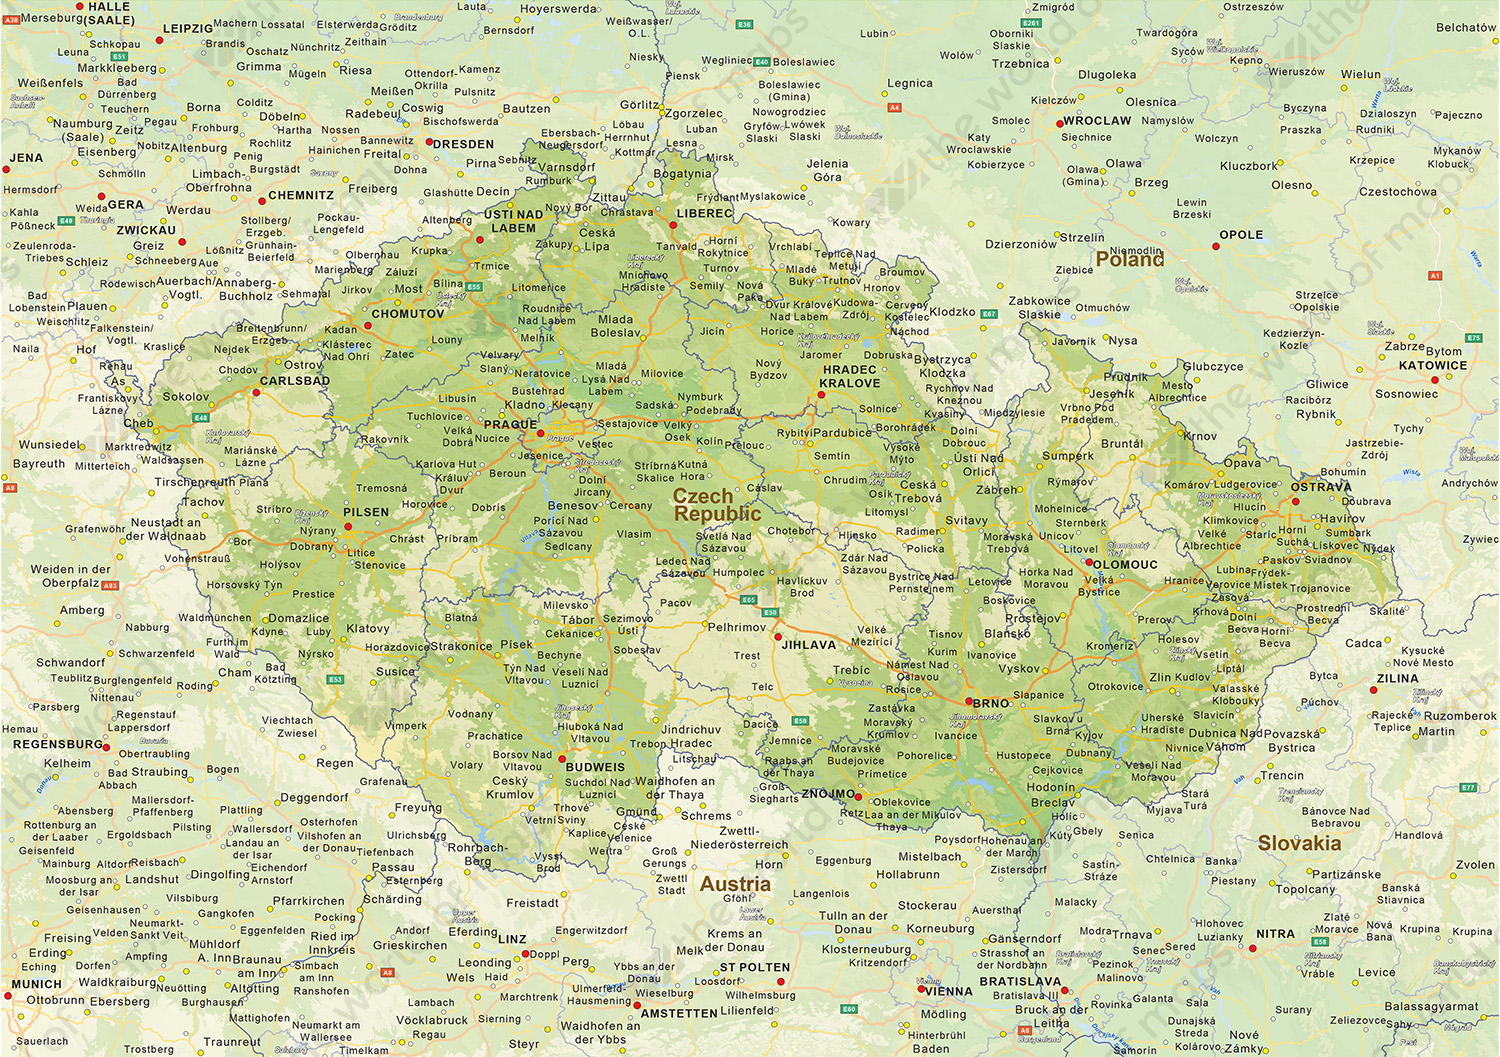 Digital physical map of Czech Republik 